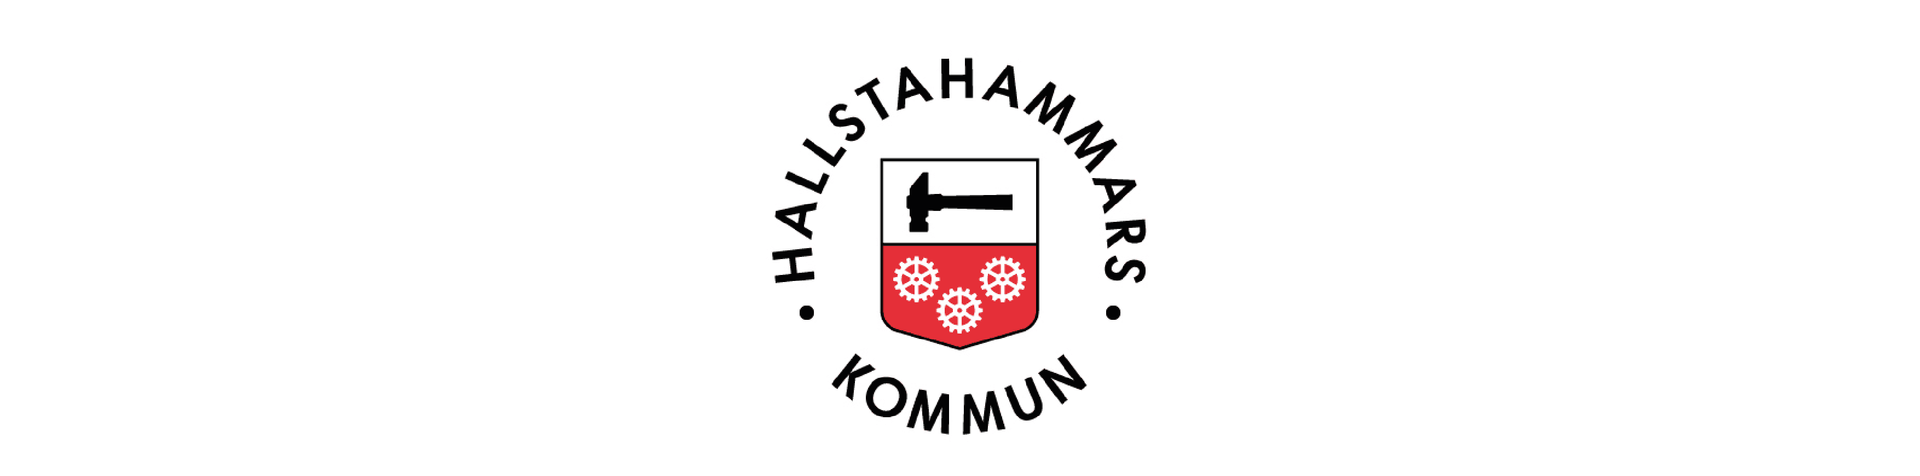 Hallstahammars kommuns logga